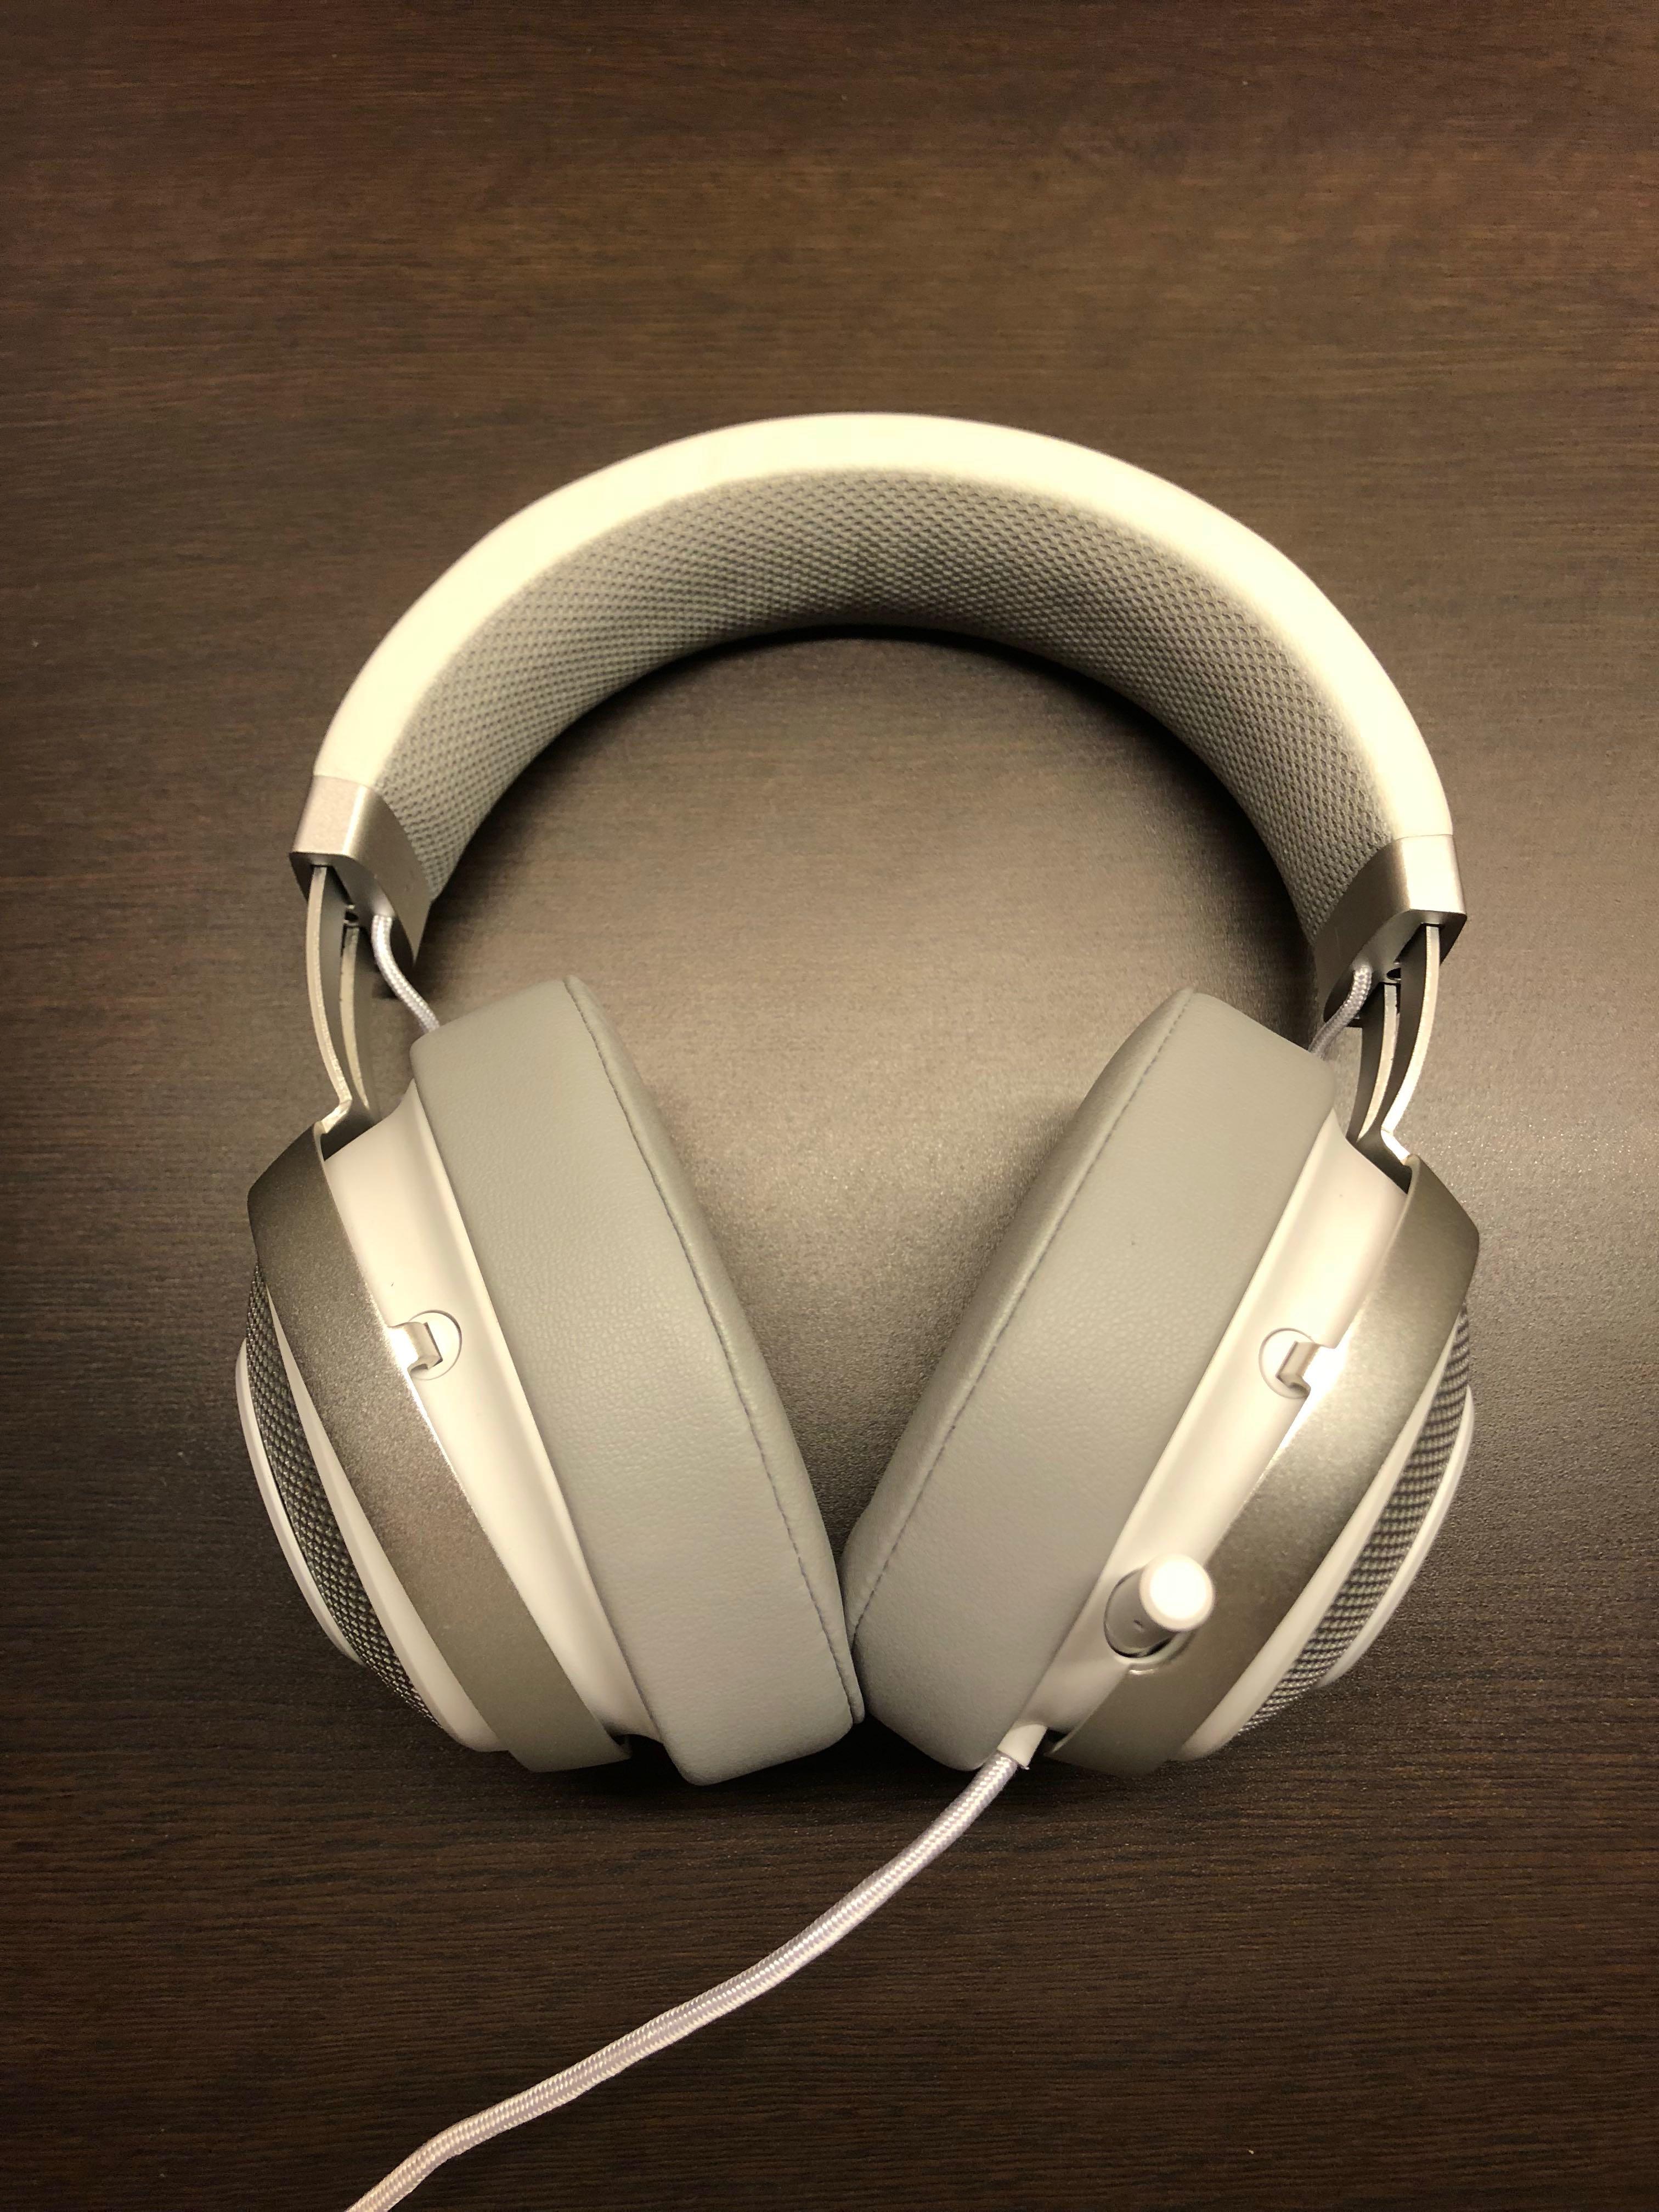 Razer Kraken 7 1 V2 Mercury White Used Audio Headphones Headsets On Carousell